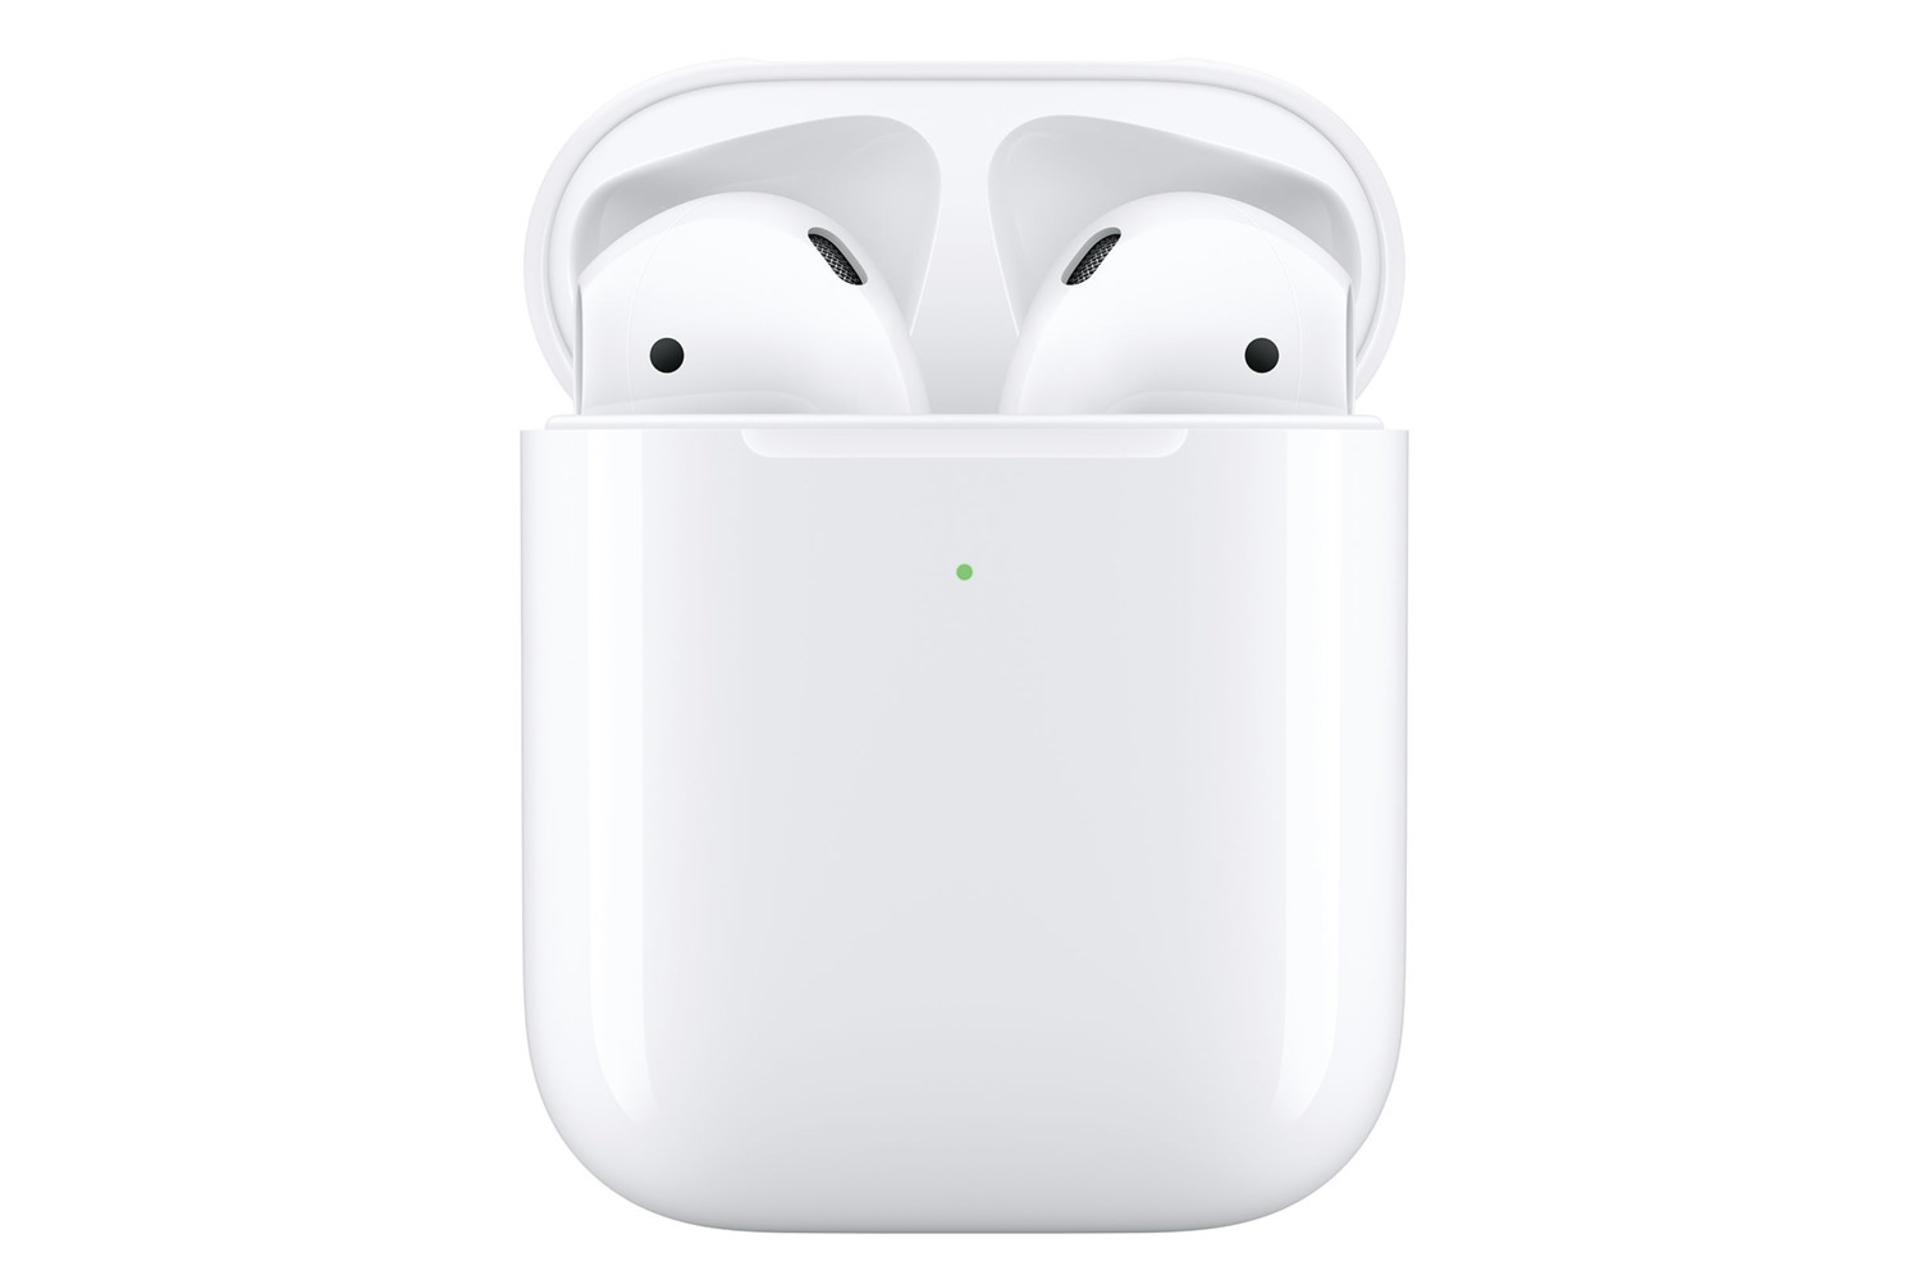 اپل ایرپادز نسل دوم / Apple AirPods 2nd Gen درون کیس و چراغ شارژ